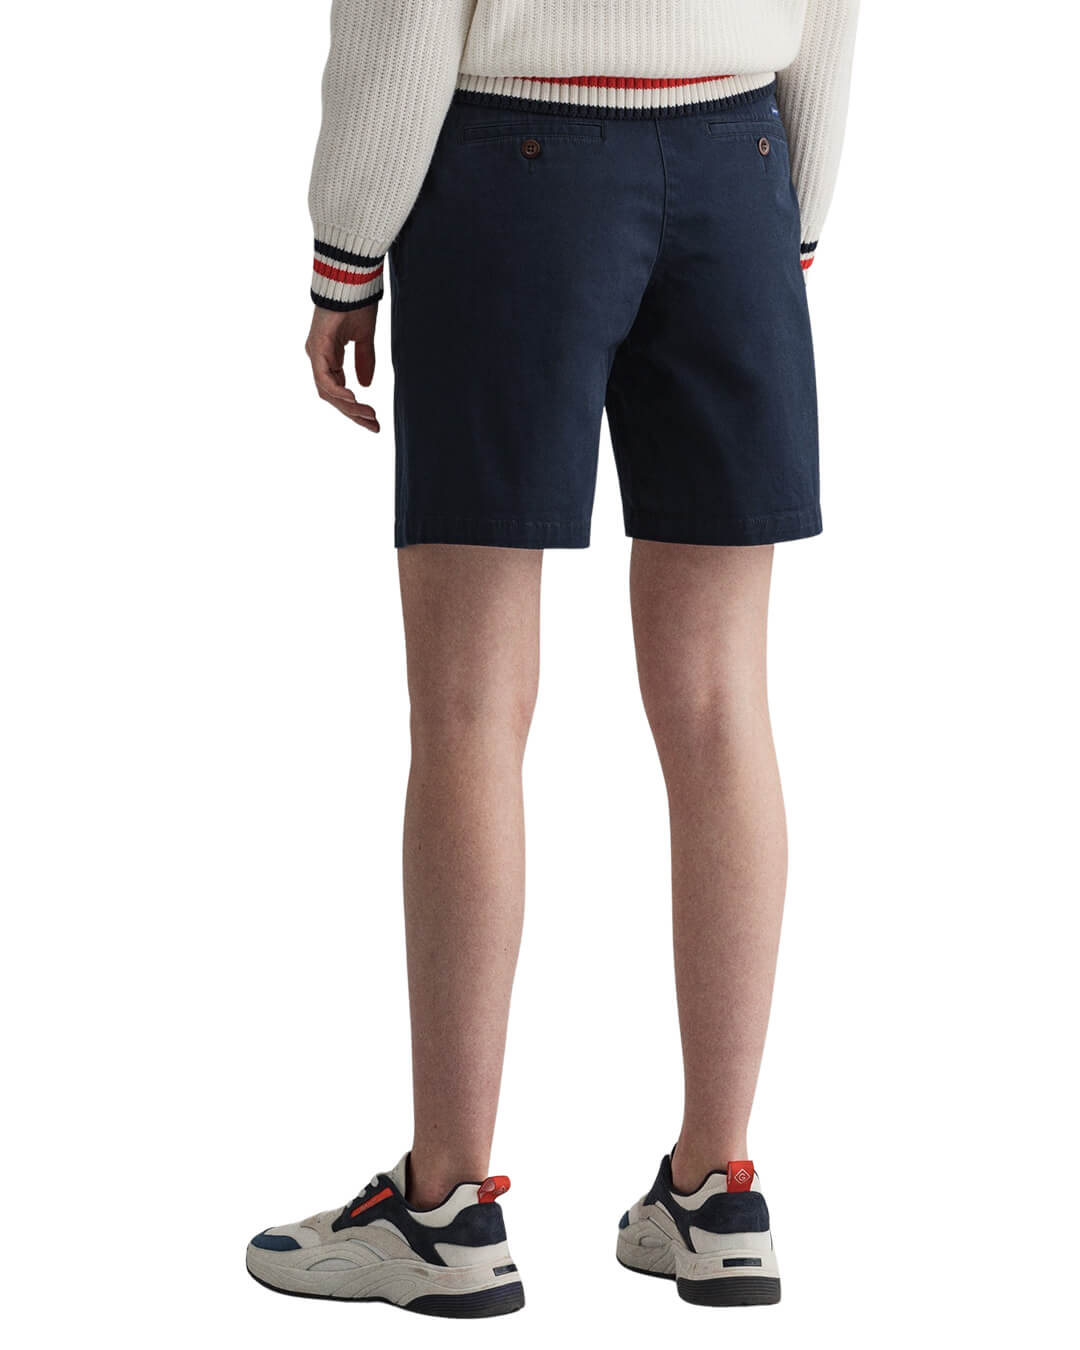 Gant Shorts Gant Slim Fit Classic Navy Chino Shorts